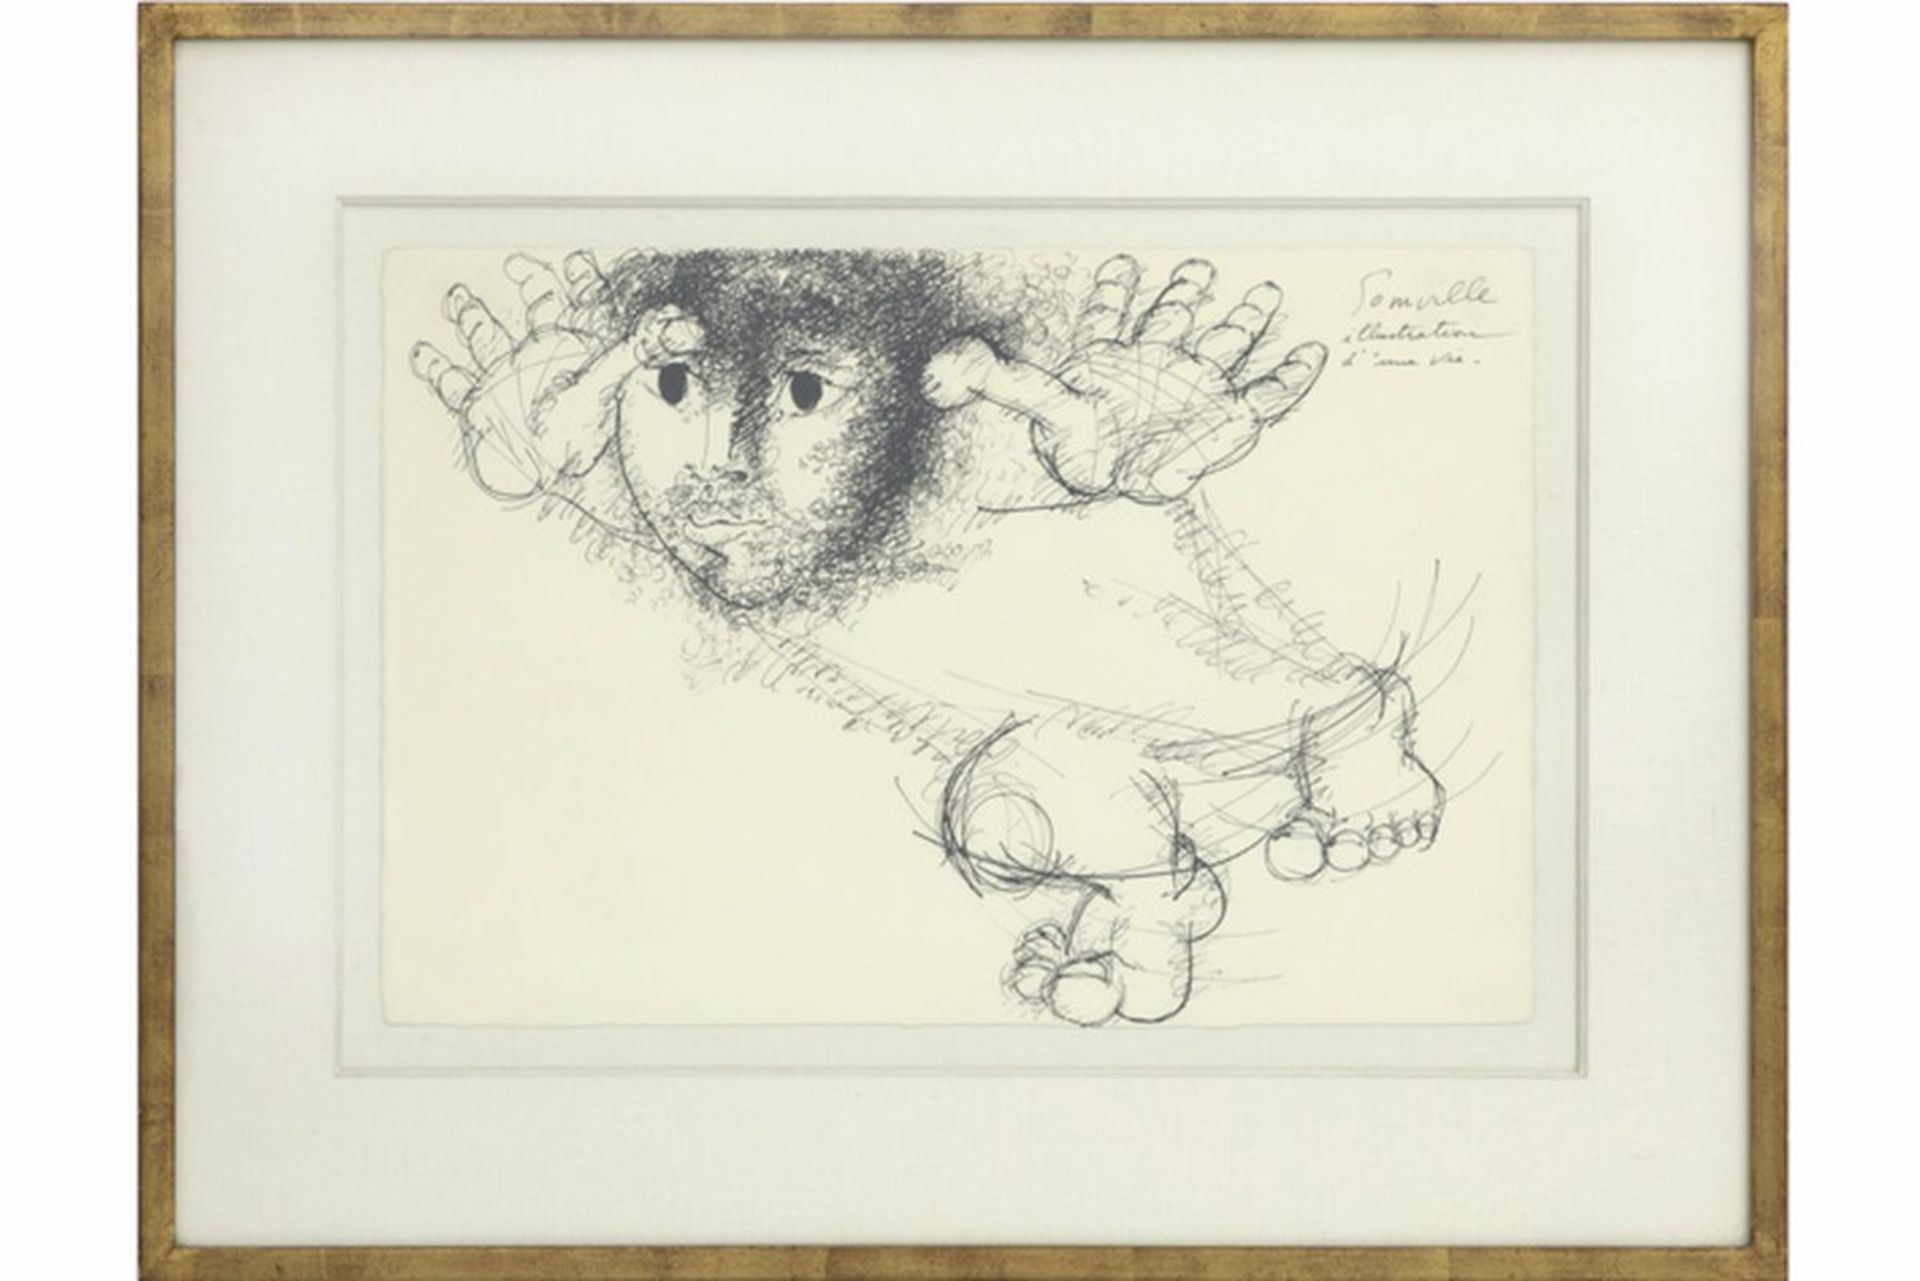 SOMVILLE ROGER (1923 - 2014) tekening in inkt getiteld "Illustration d'une vie" - [...]